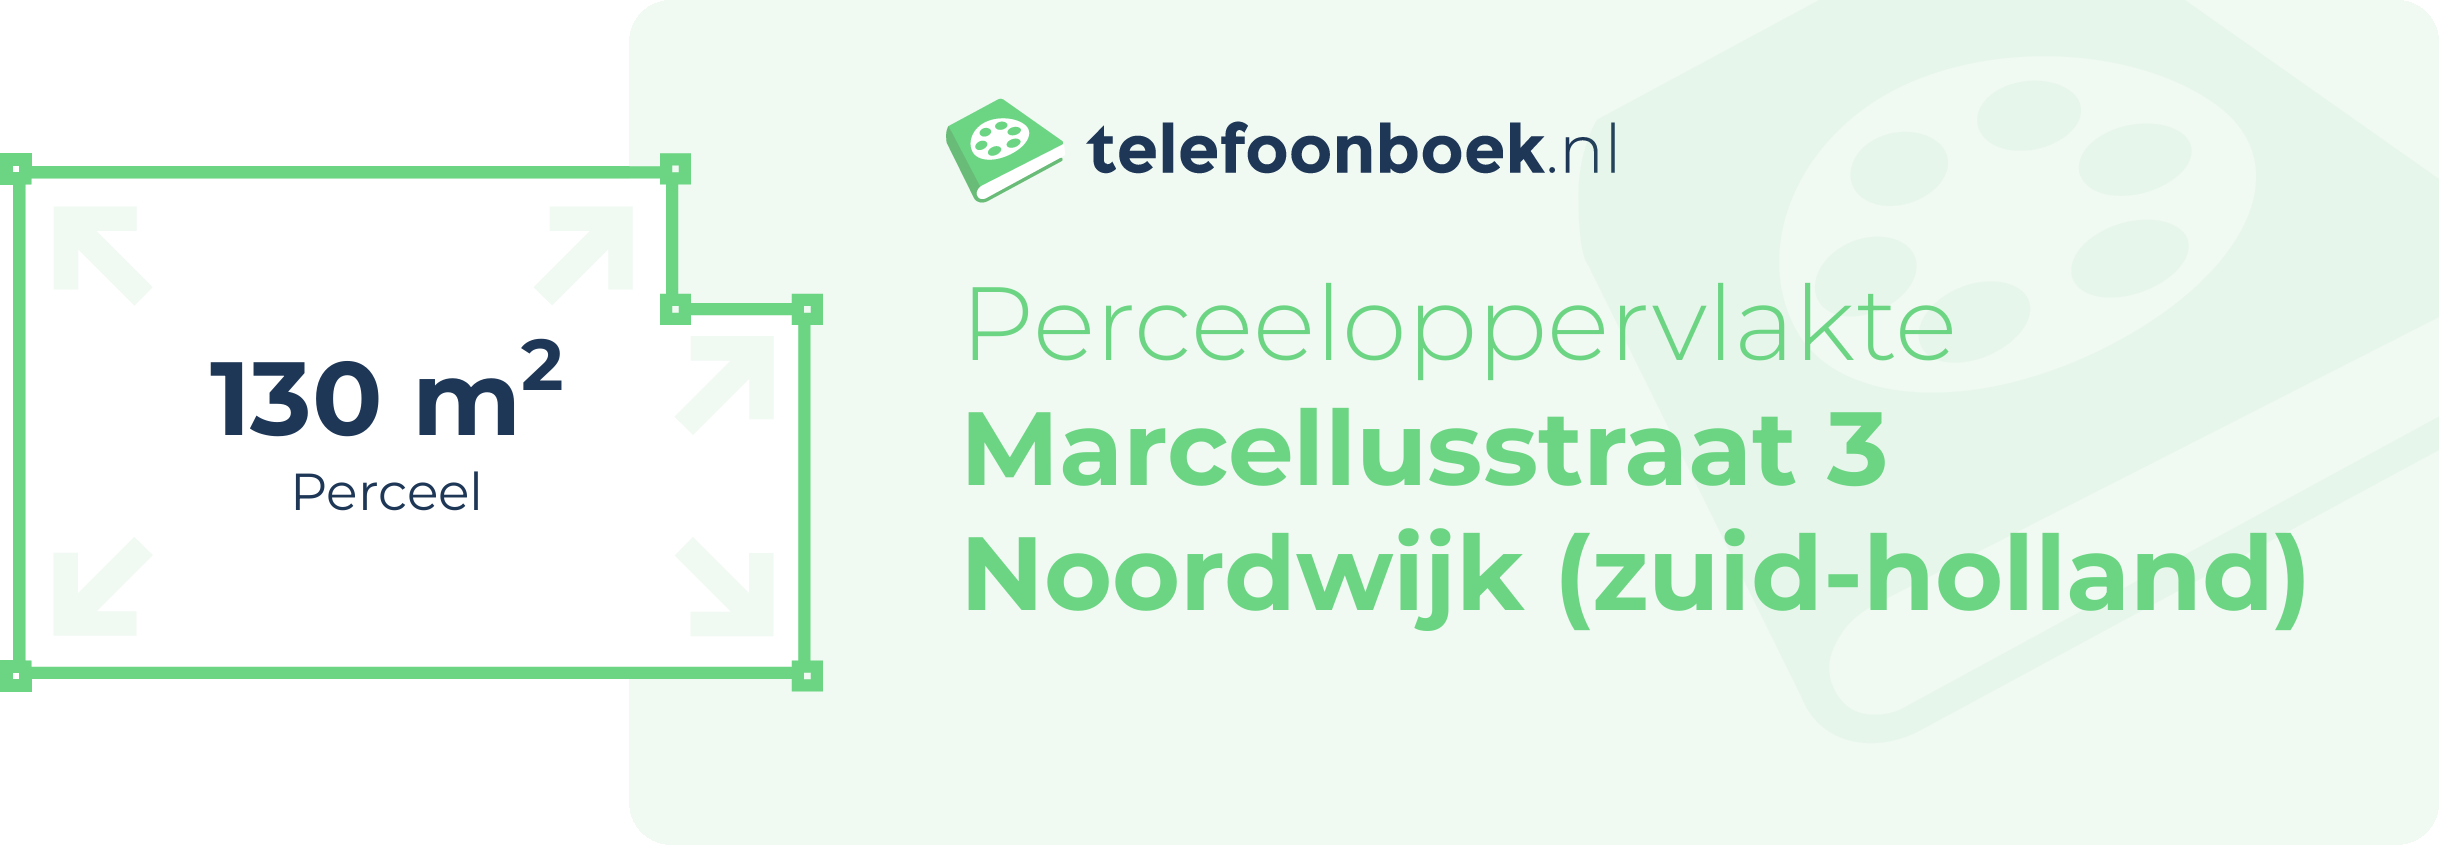 Perceeloppervlakte Marcellusstraat 3 Noordwijk (Zuid-Holland)